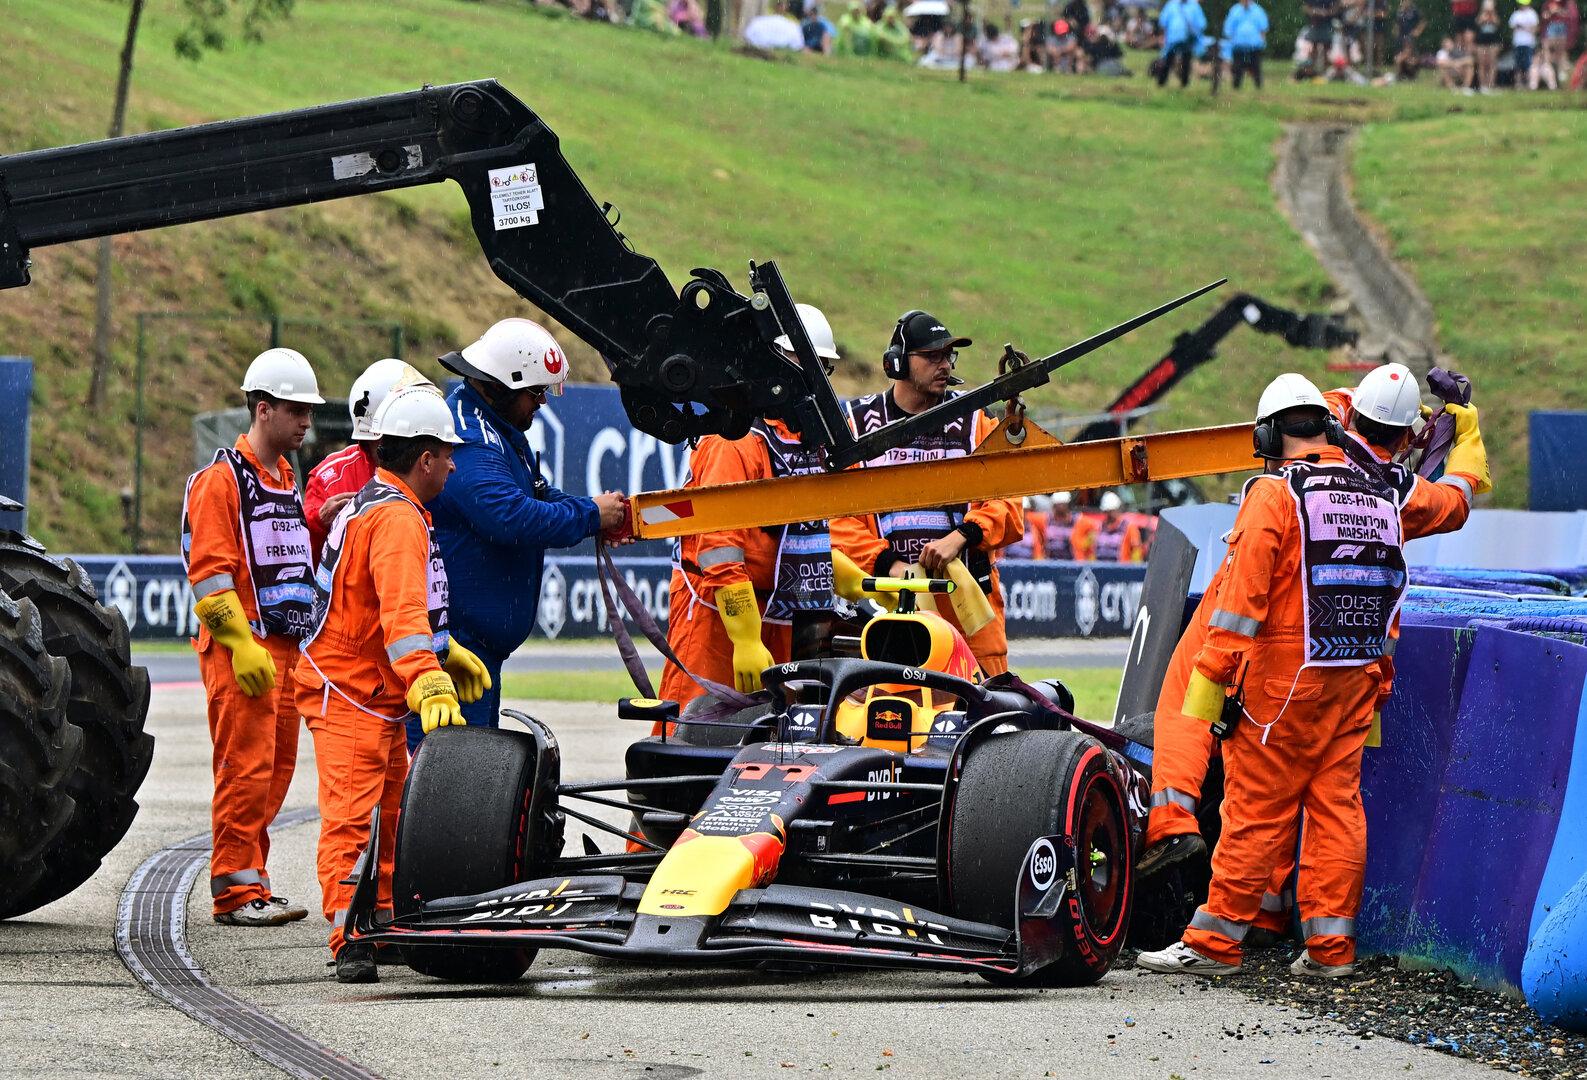 Bitteres Qualifying für Red Bull: Sergio Perez crashte, Max Verstappen liegt zurück